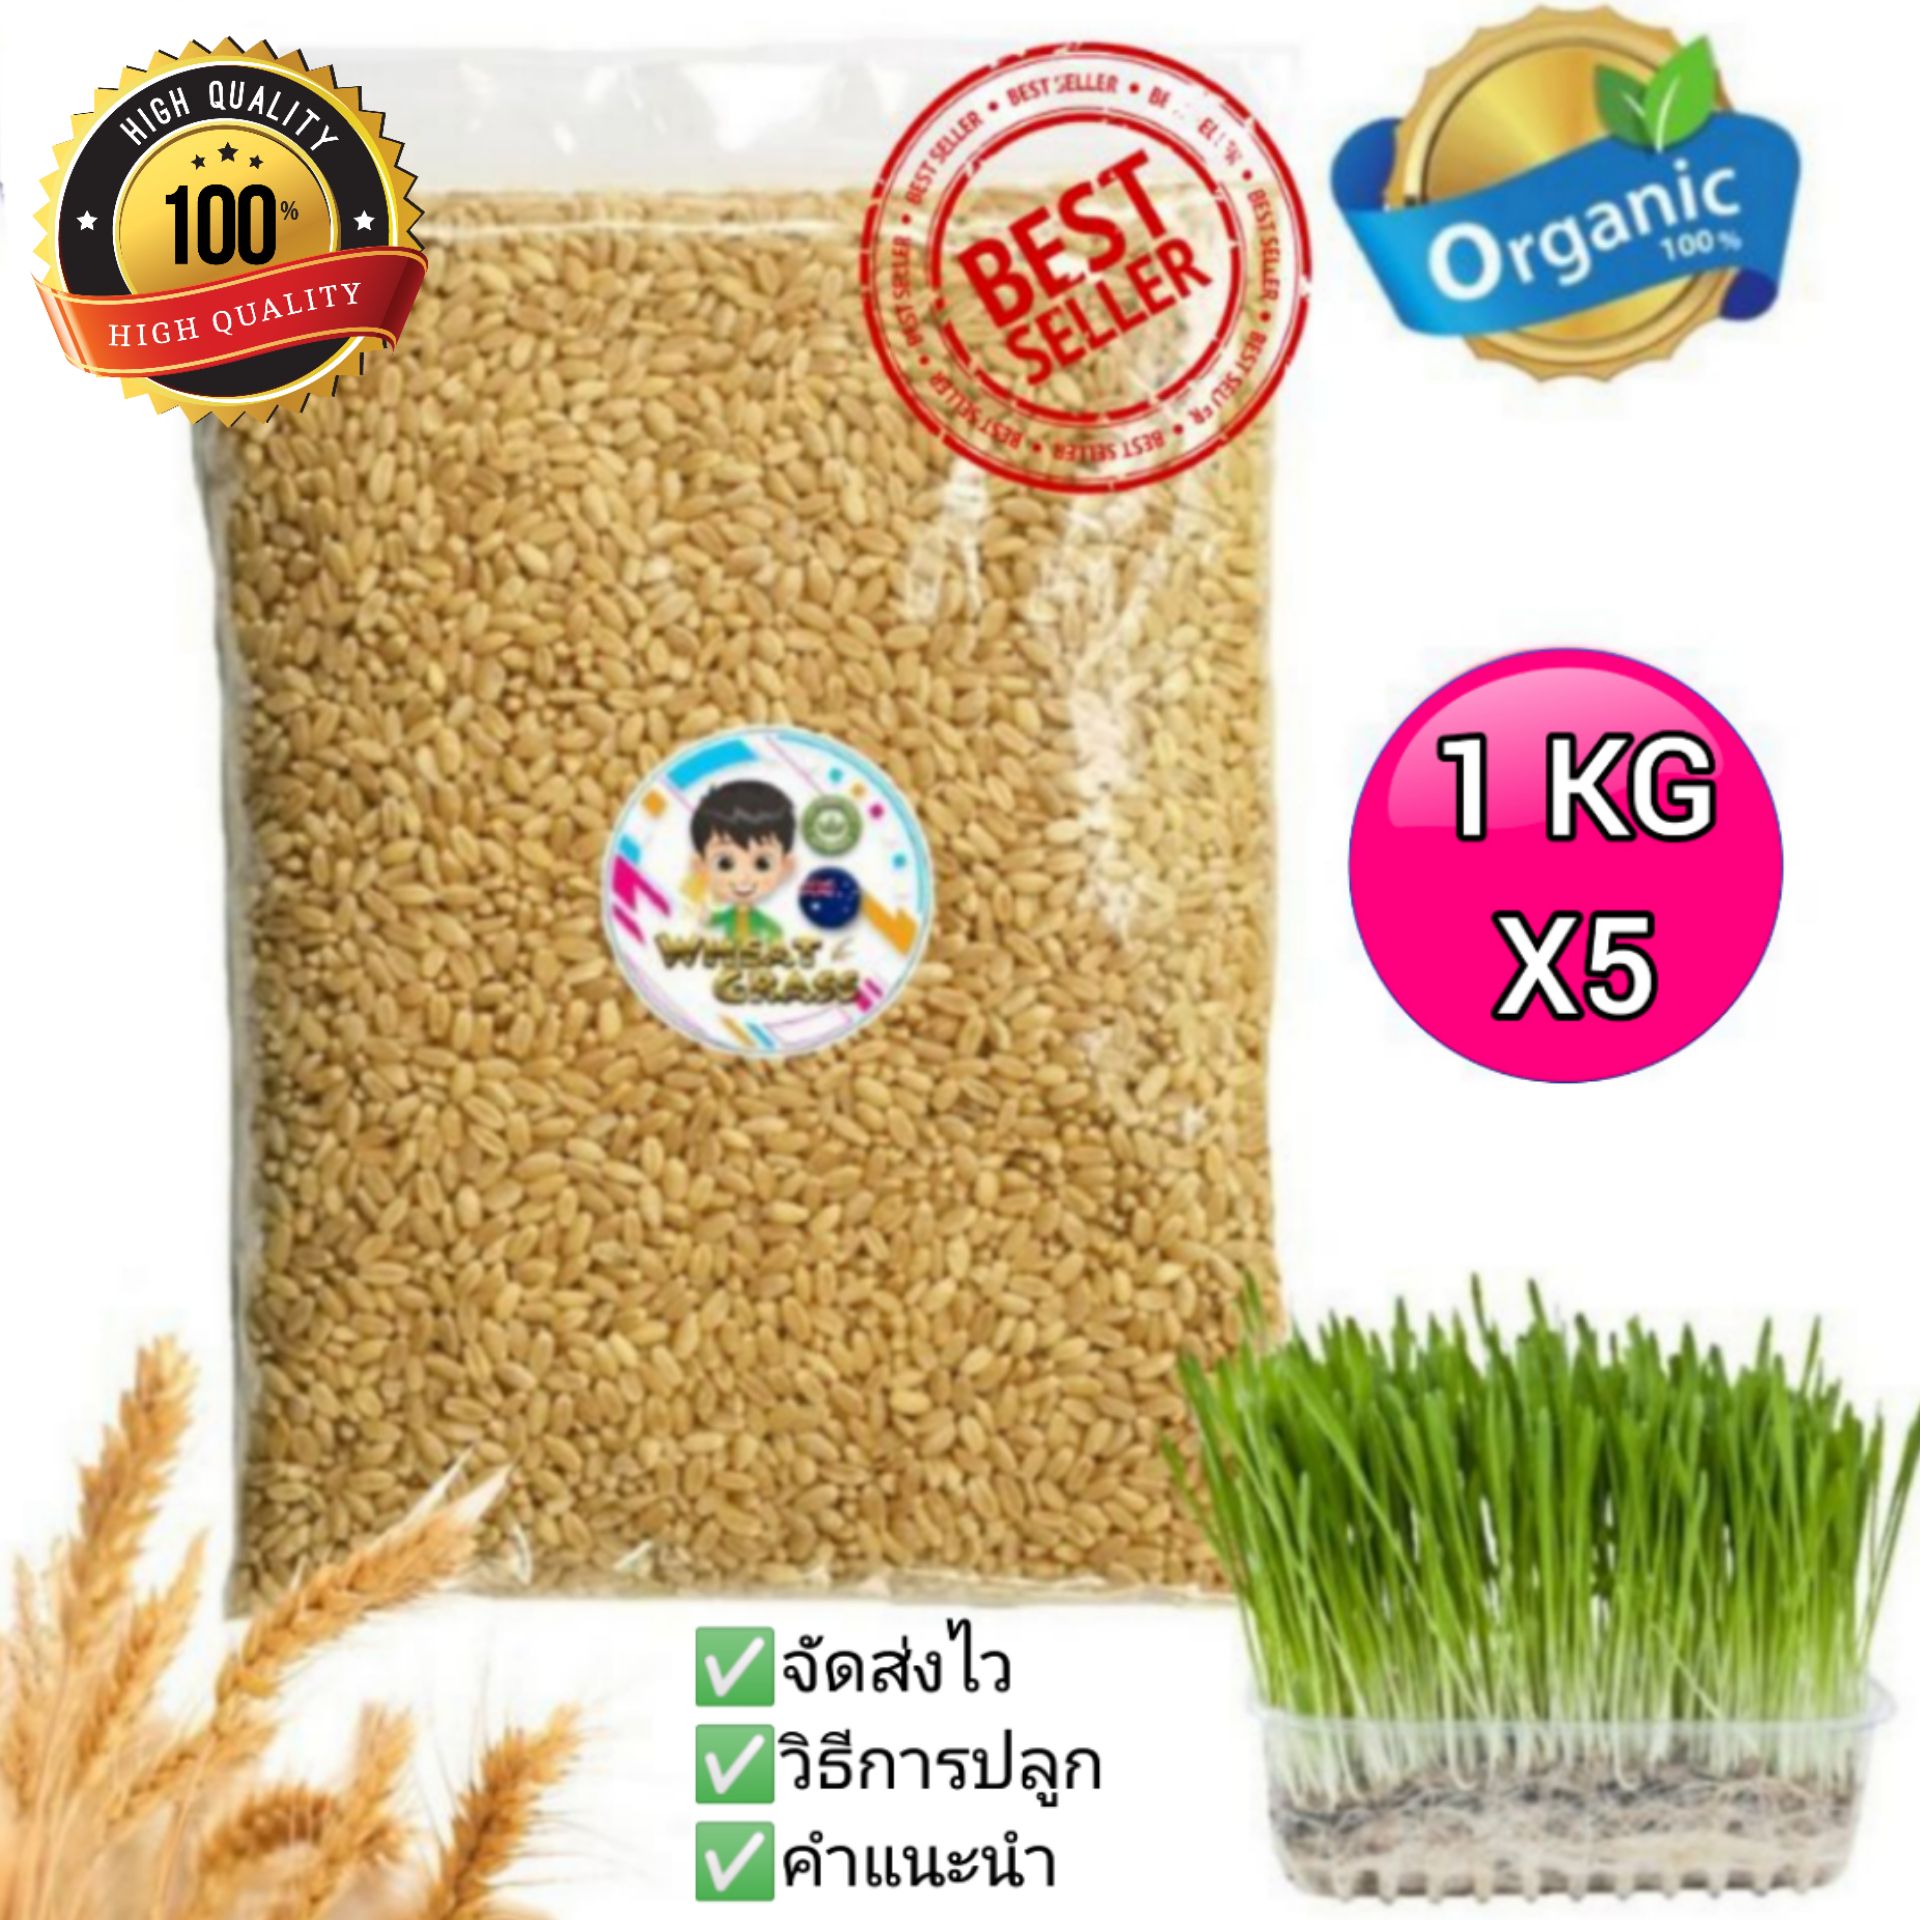 เมล็ดข้าวสาลี (1 กก x 5) ราคาถูกเกรดนำเข้า Australian Wheat หญ้าแมว อัตราการงอกสูง? Wheat